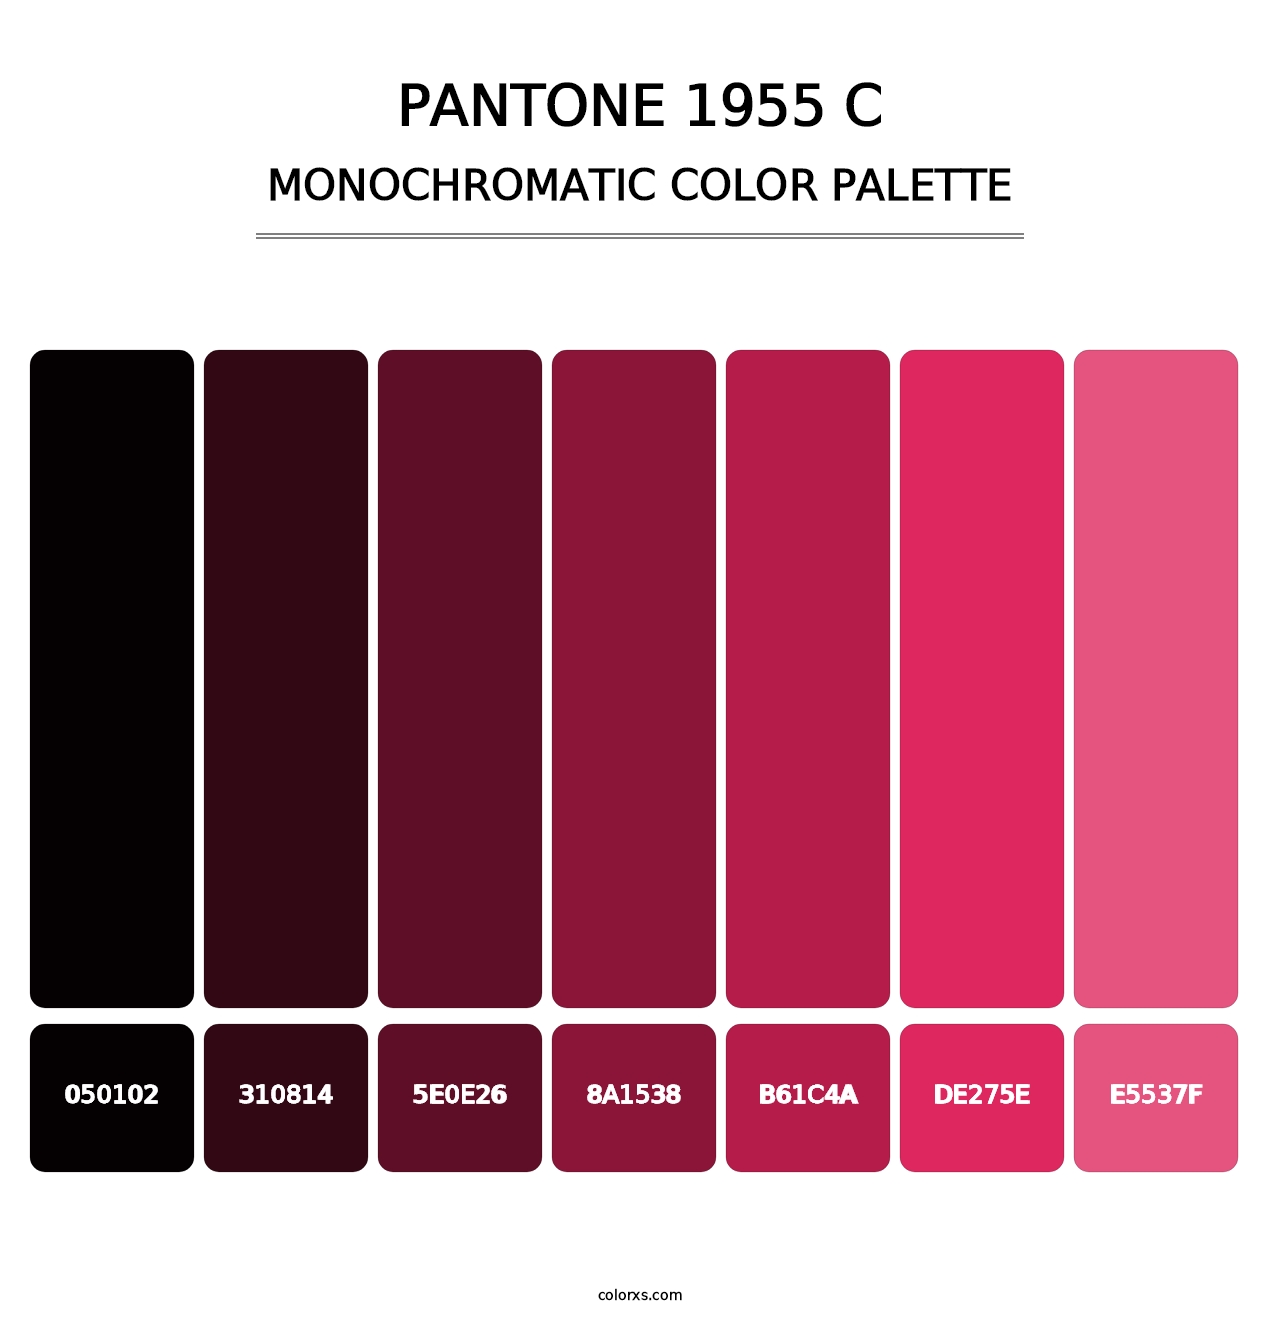 PANTONE 1955 C - Monochromatic Color Palette